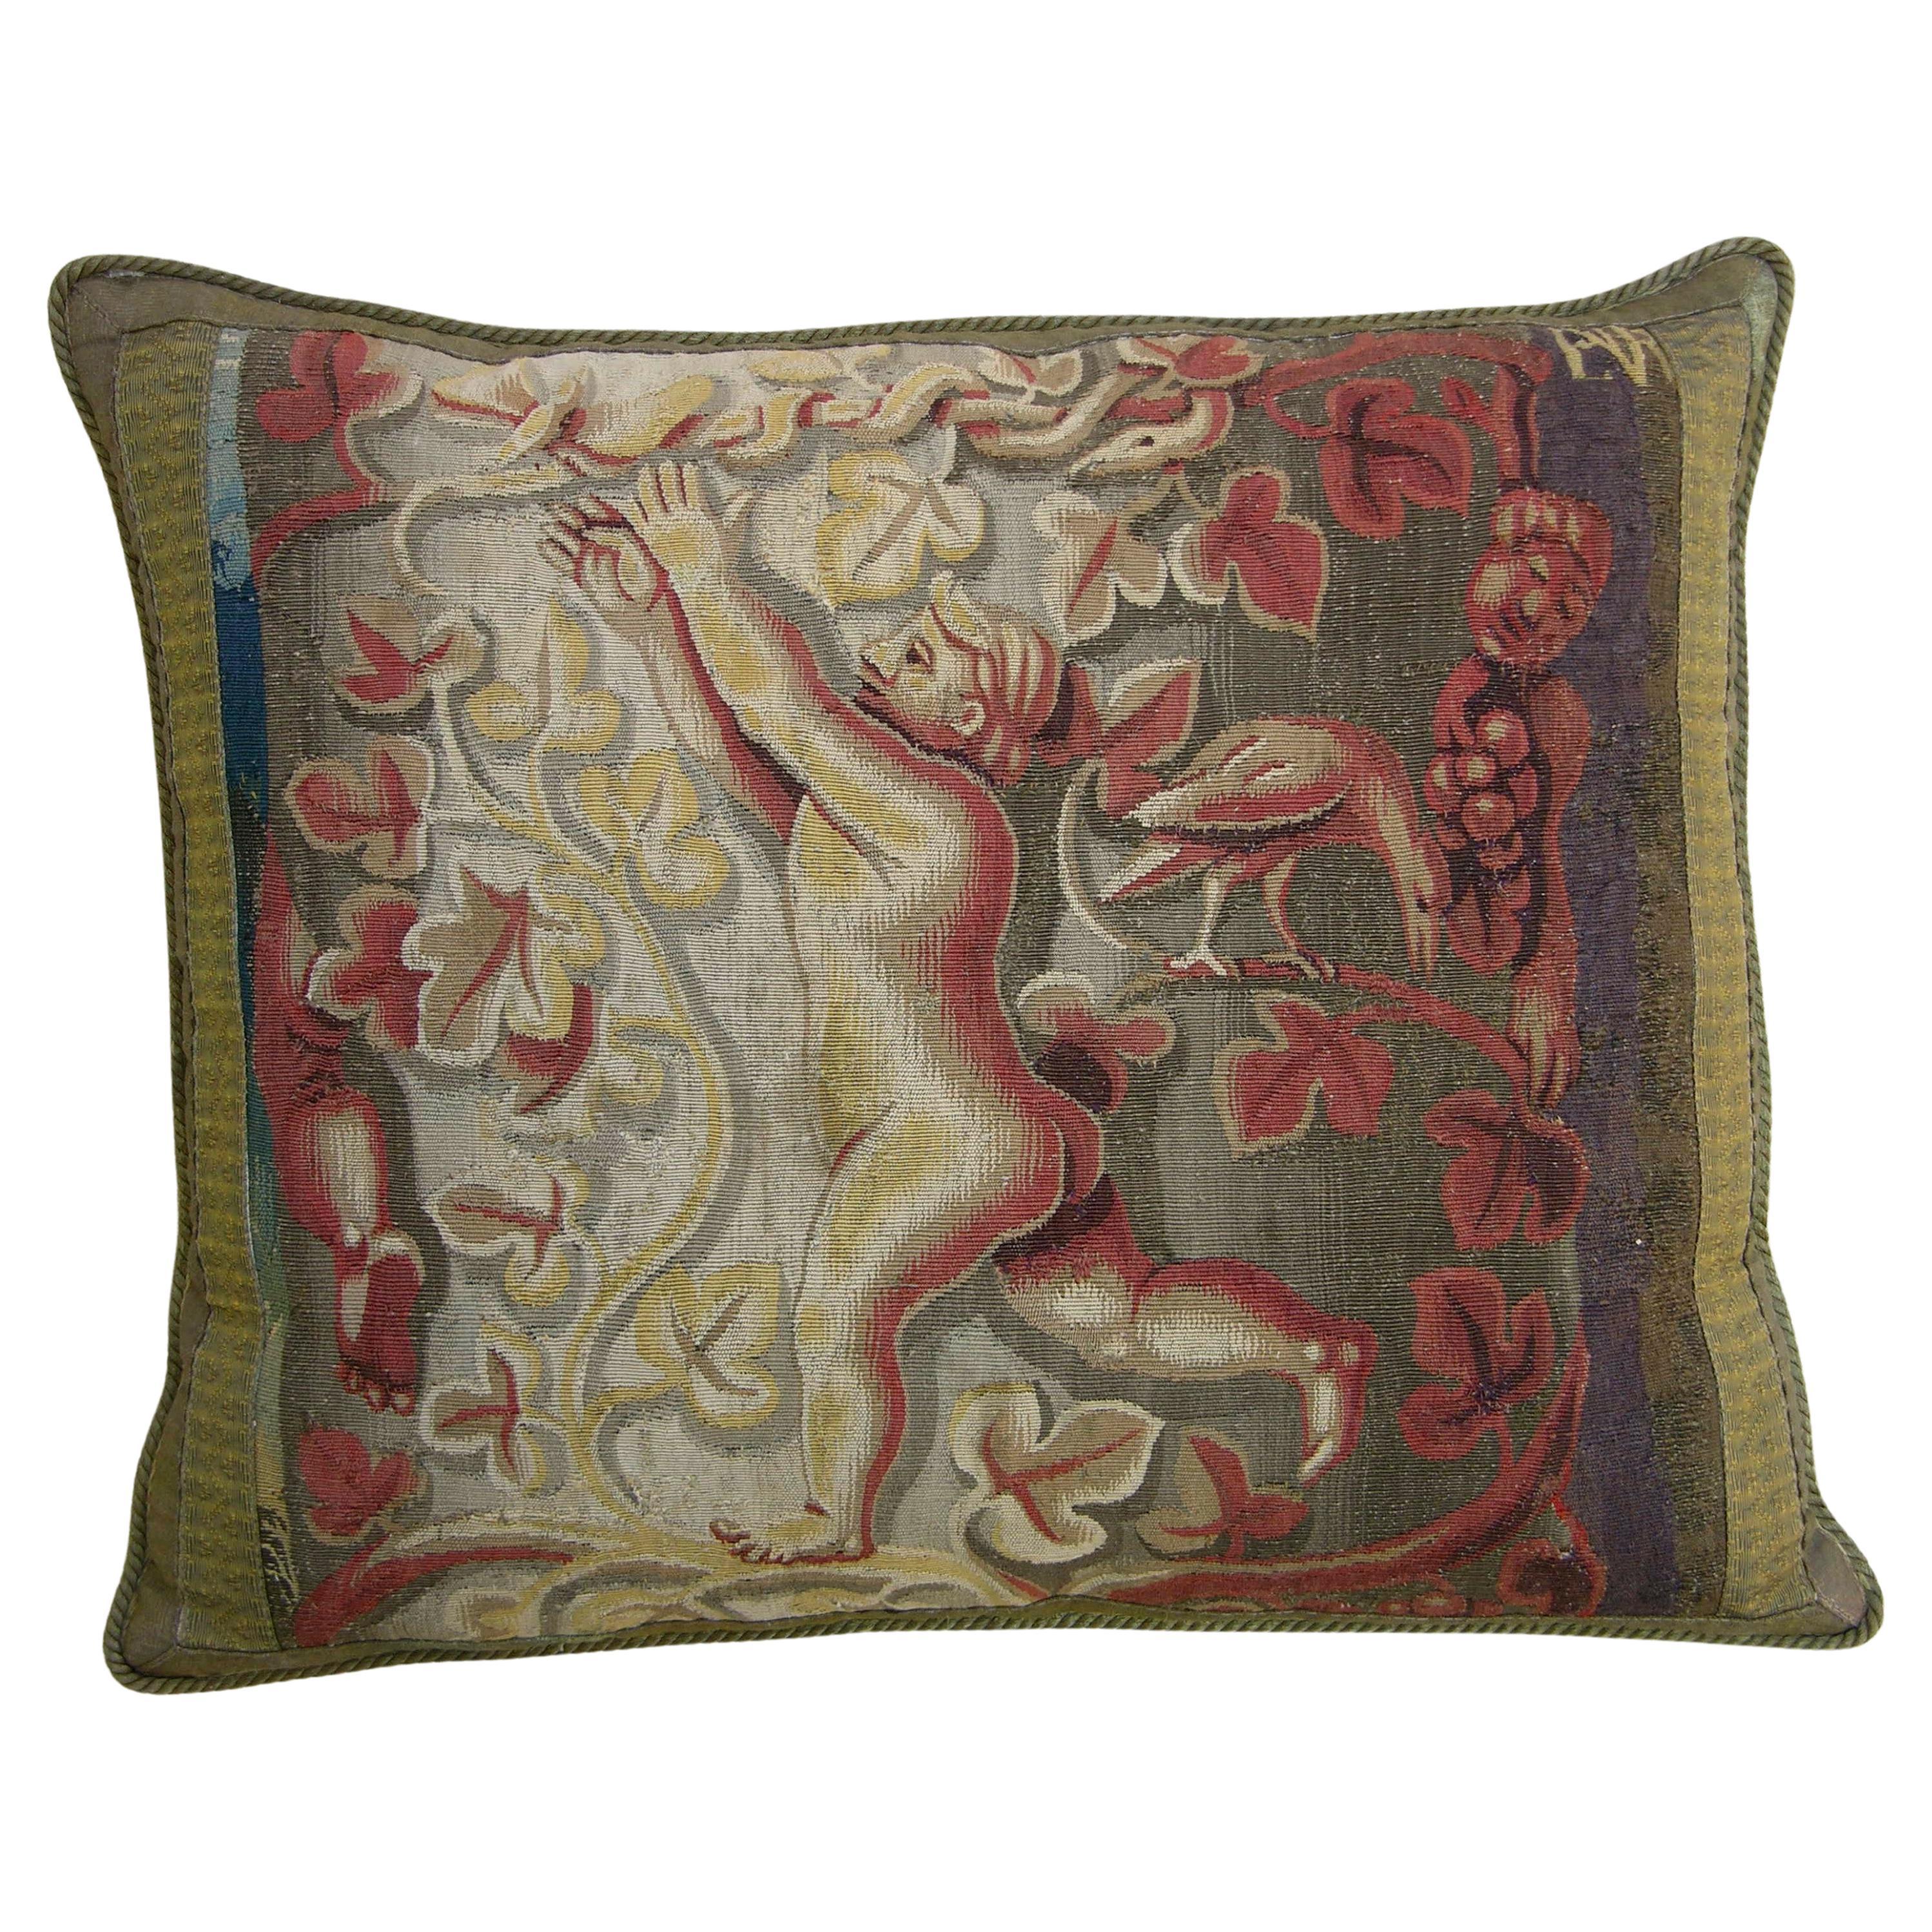 Oreiller en tapisserie flamande antique du 16e siècle - 25'' X 21''